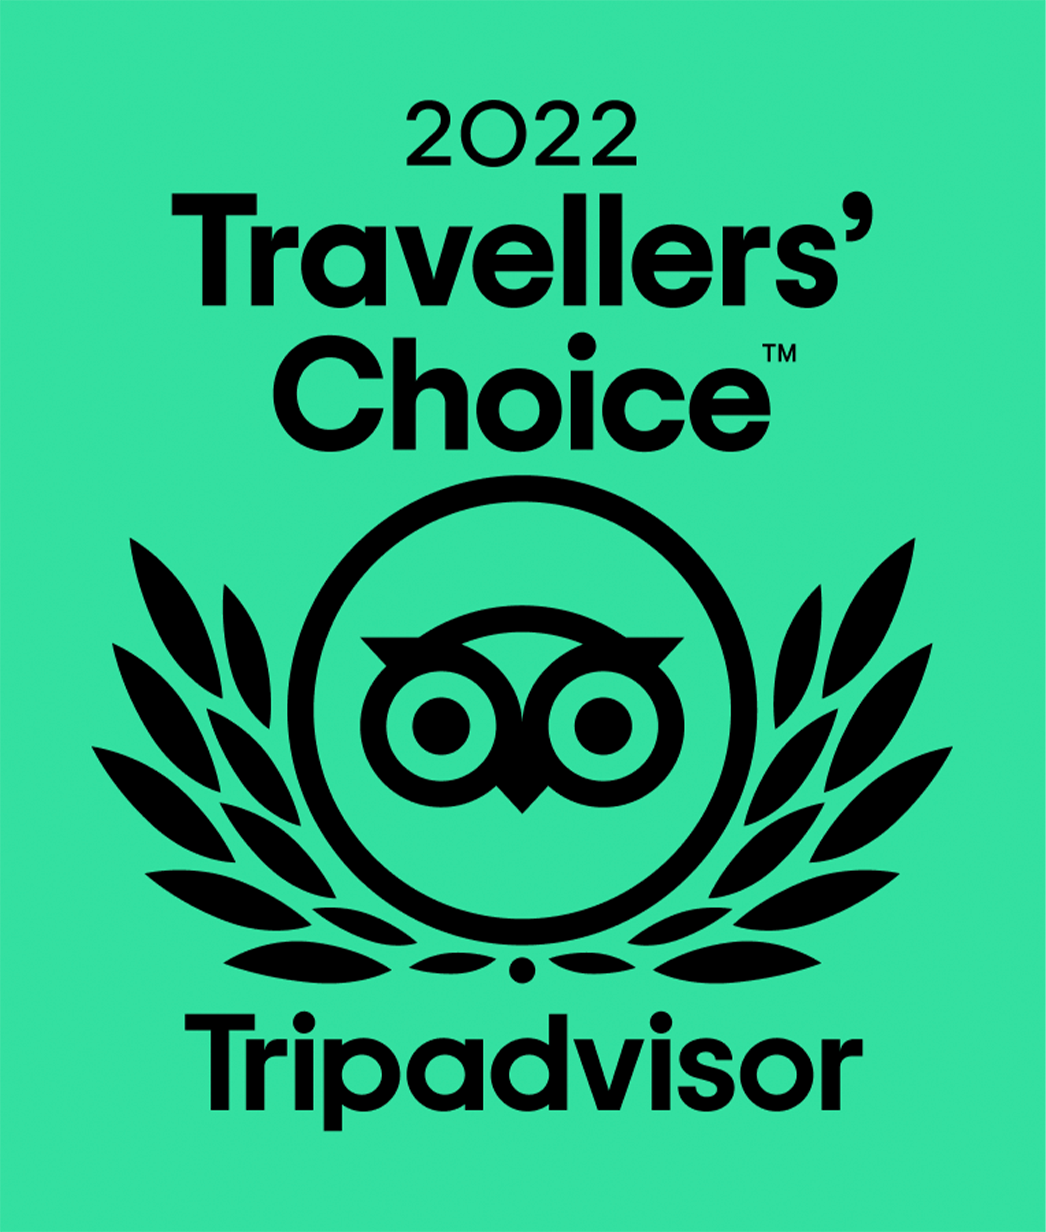 Tripadvisor Travellers' Choice 2022.